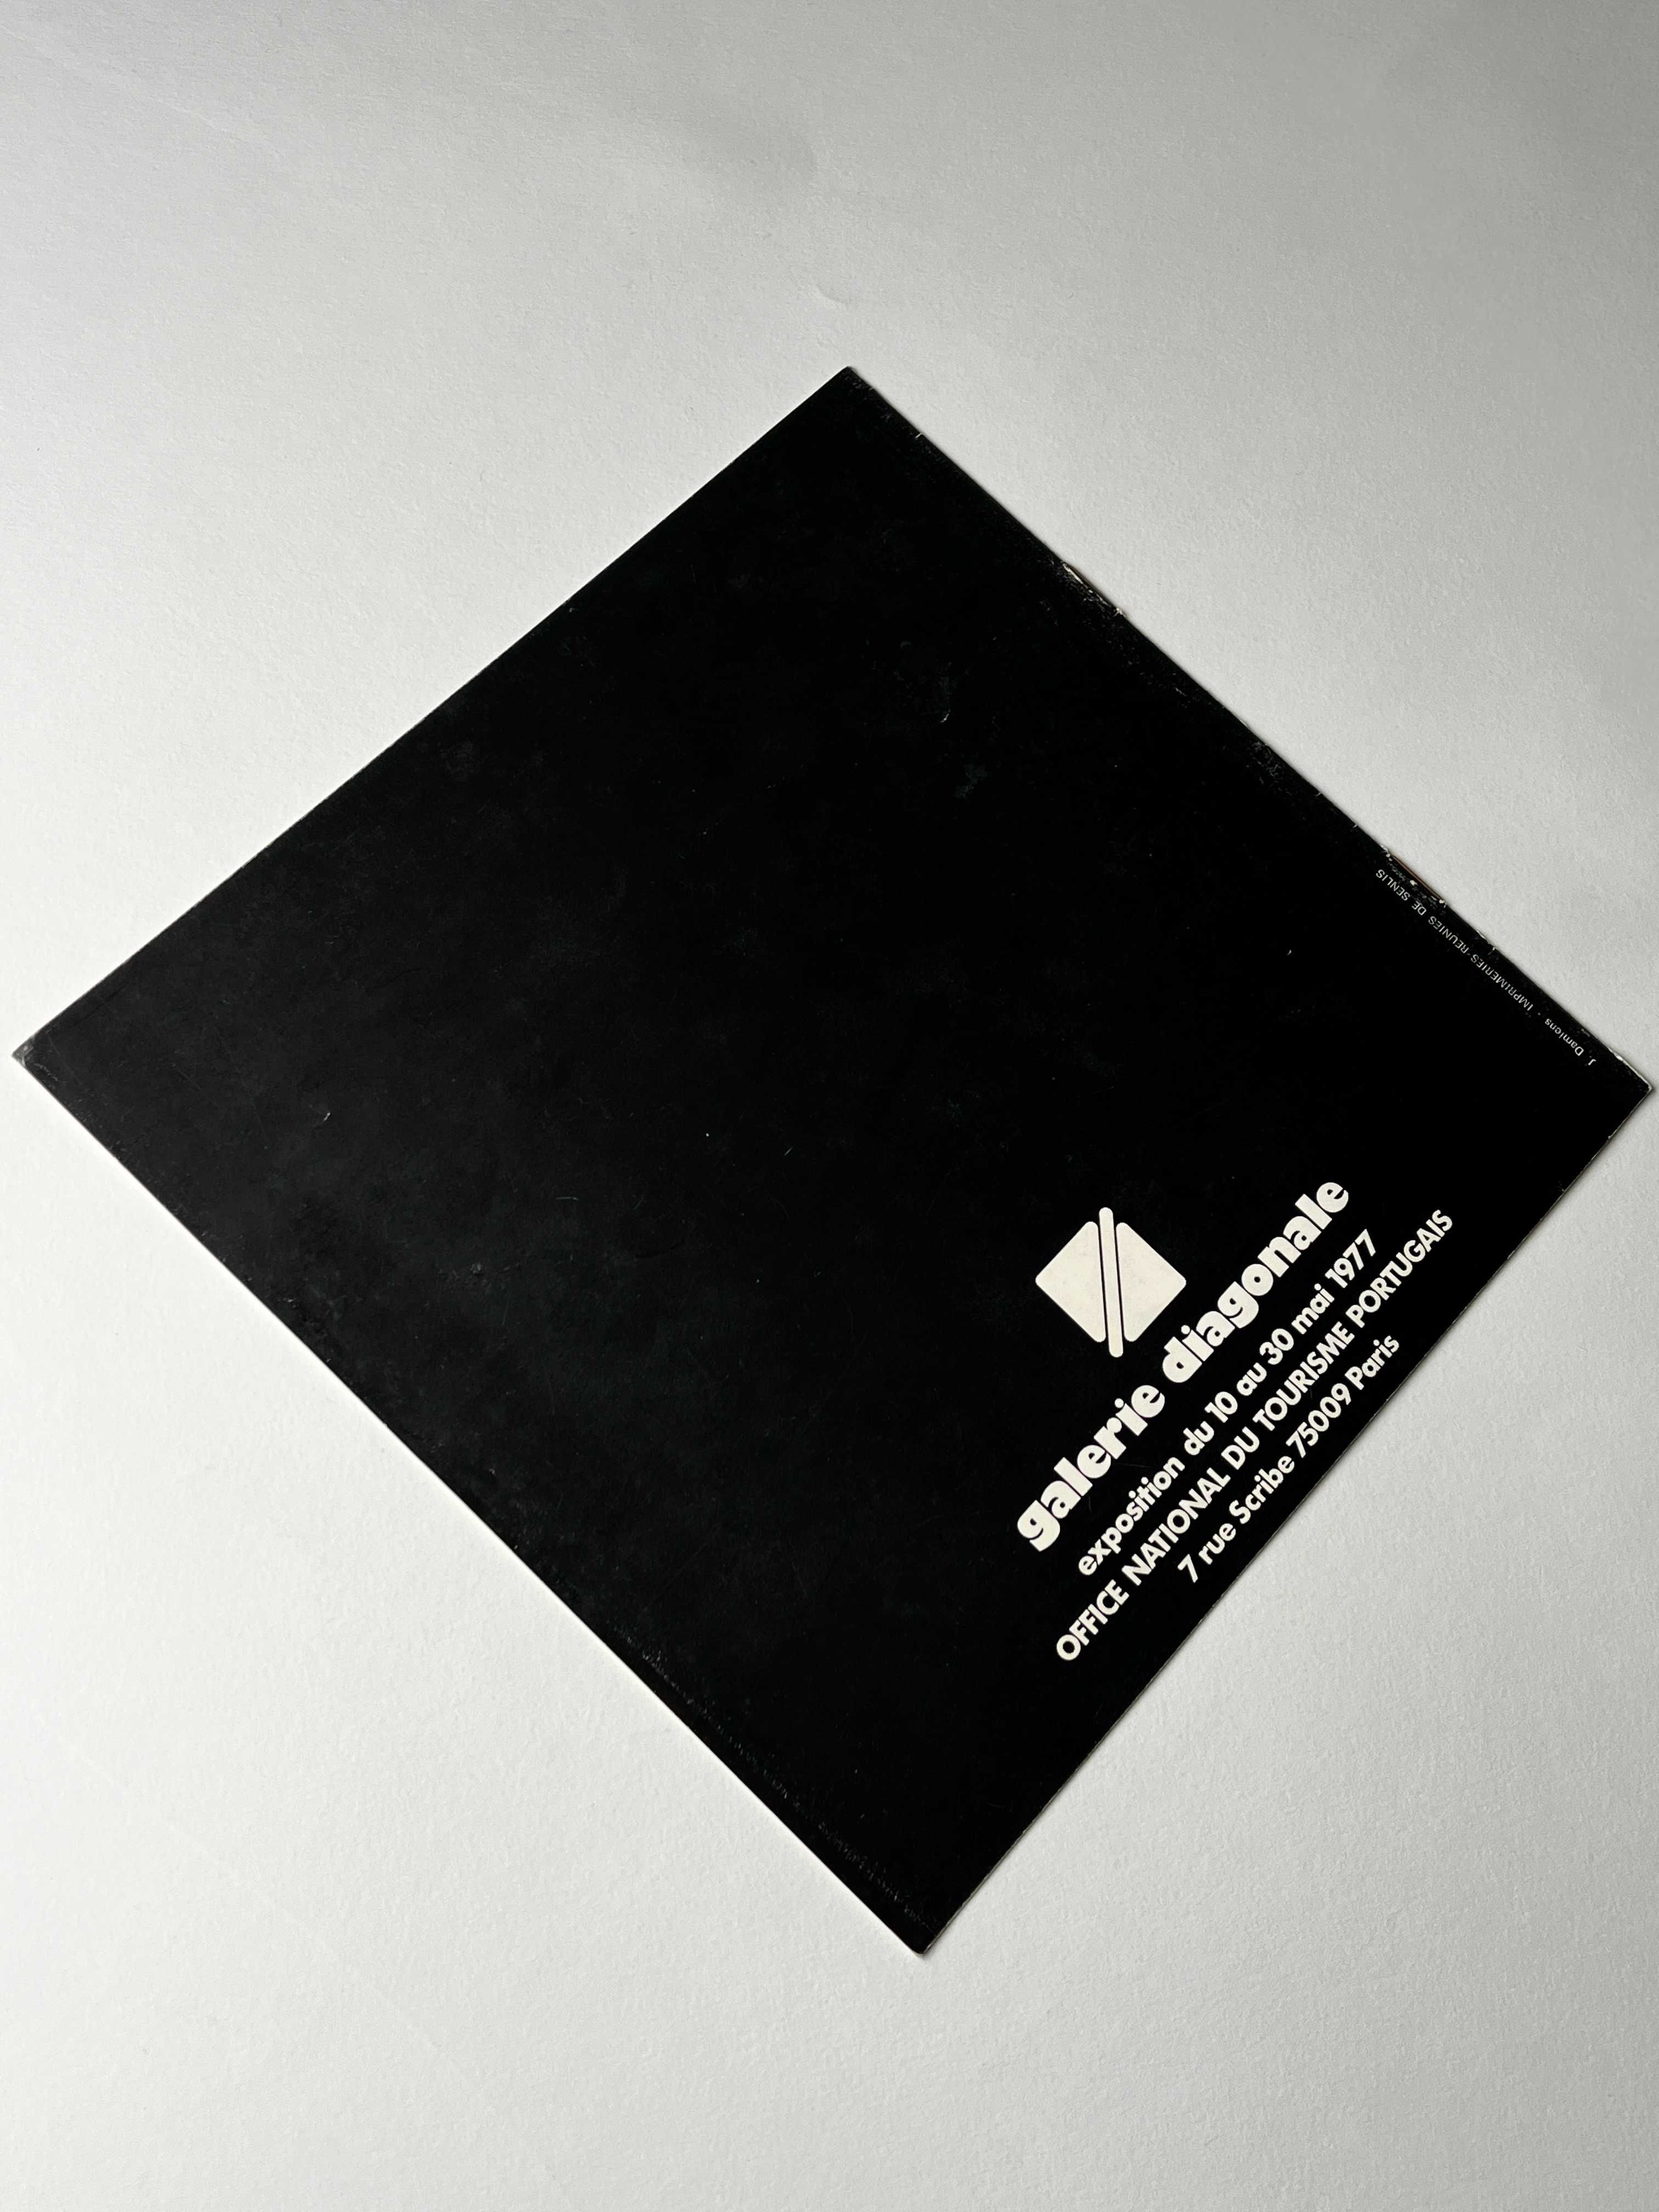 Carlos Carreiro Galerie Diagonale, 1977 Catálogo de exposição